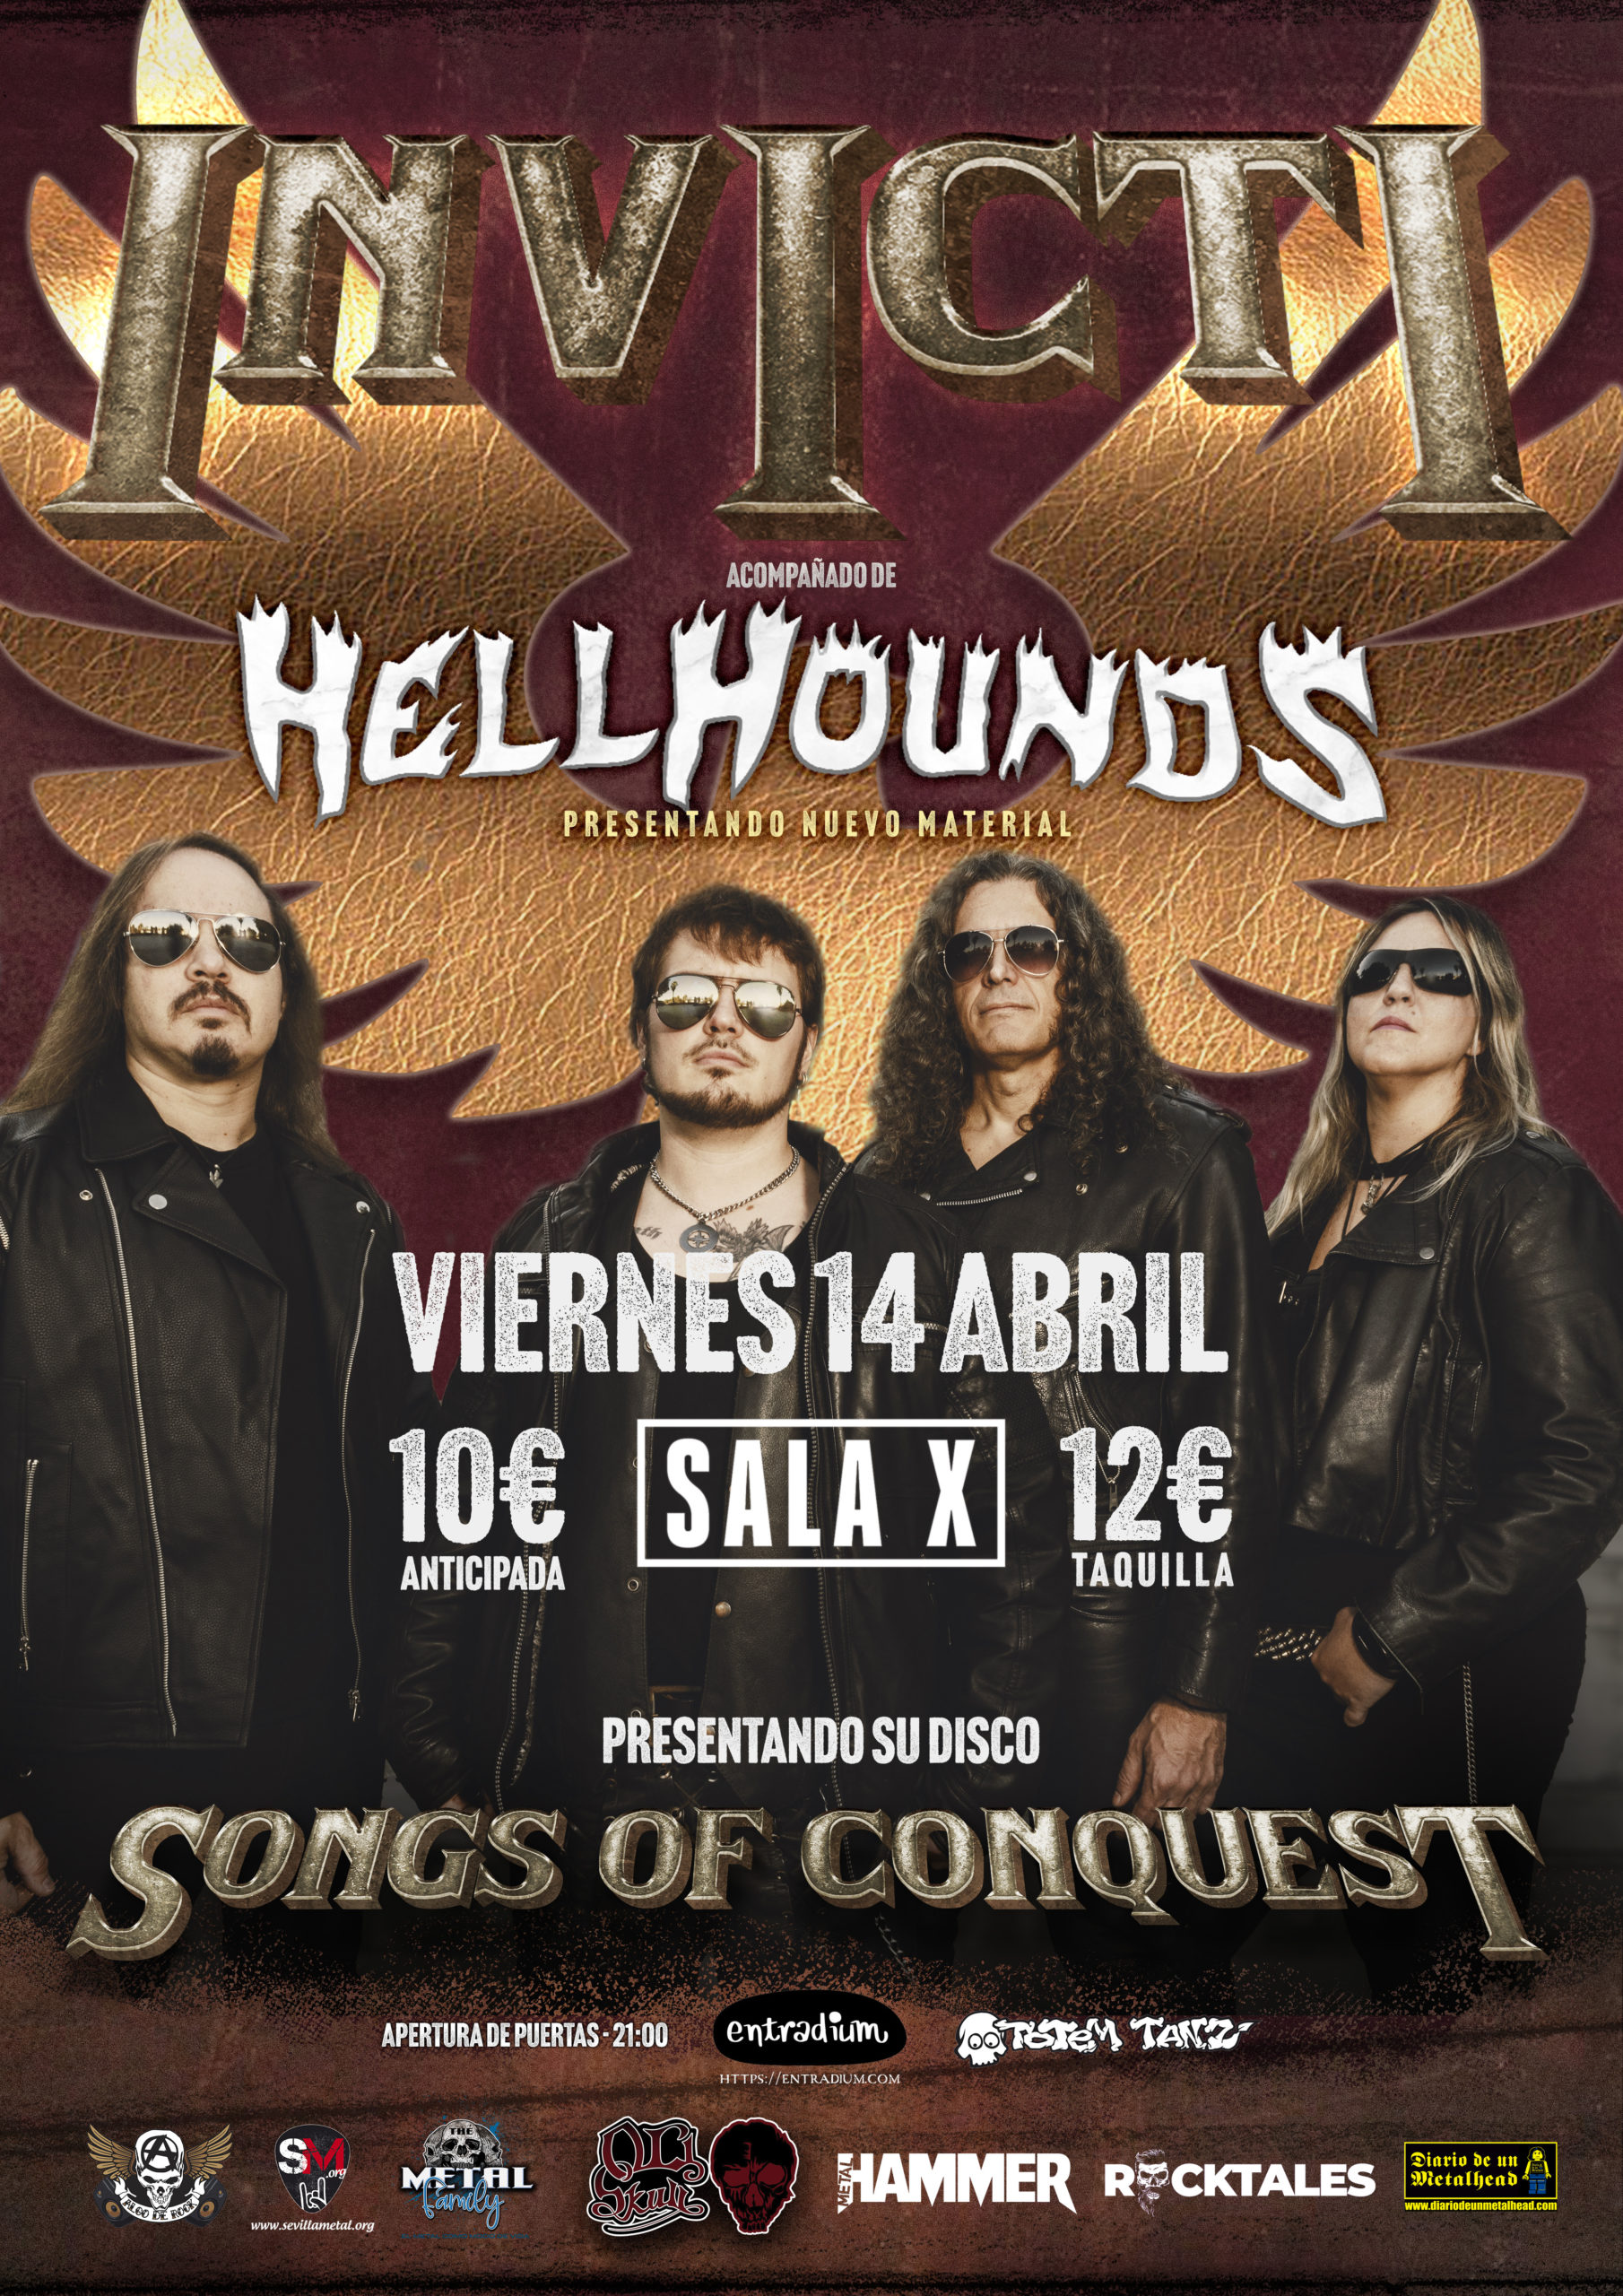 Invicti + Hellhounds estarán actuando el 14 de abril en Sevilla